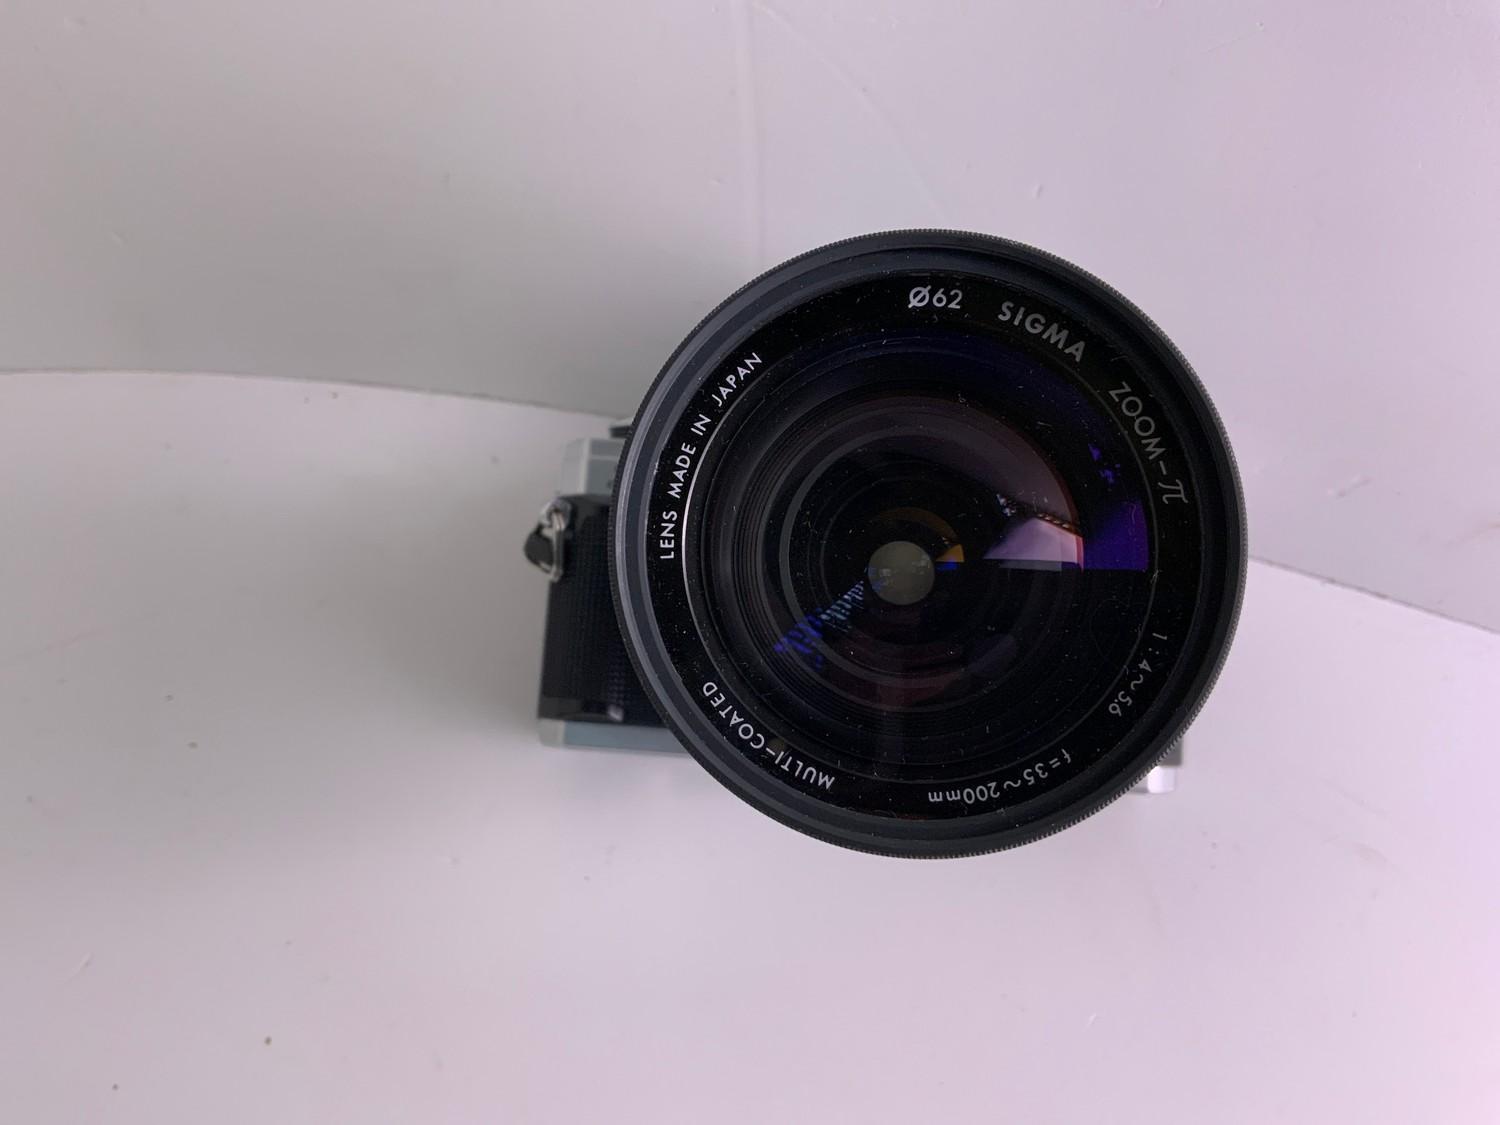 Minolta Camera in Bag - Image 3 of 3